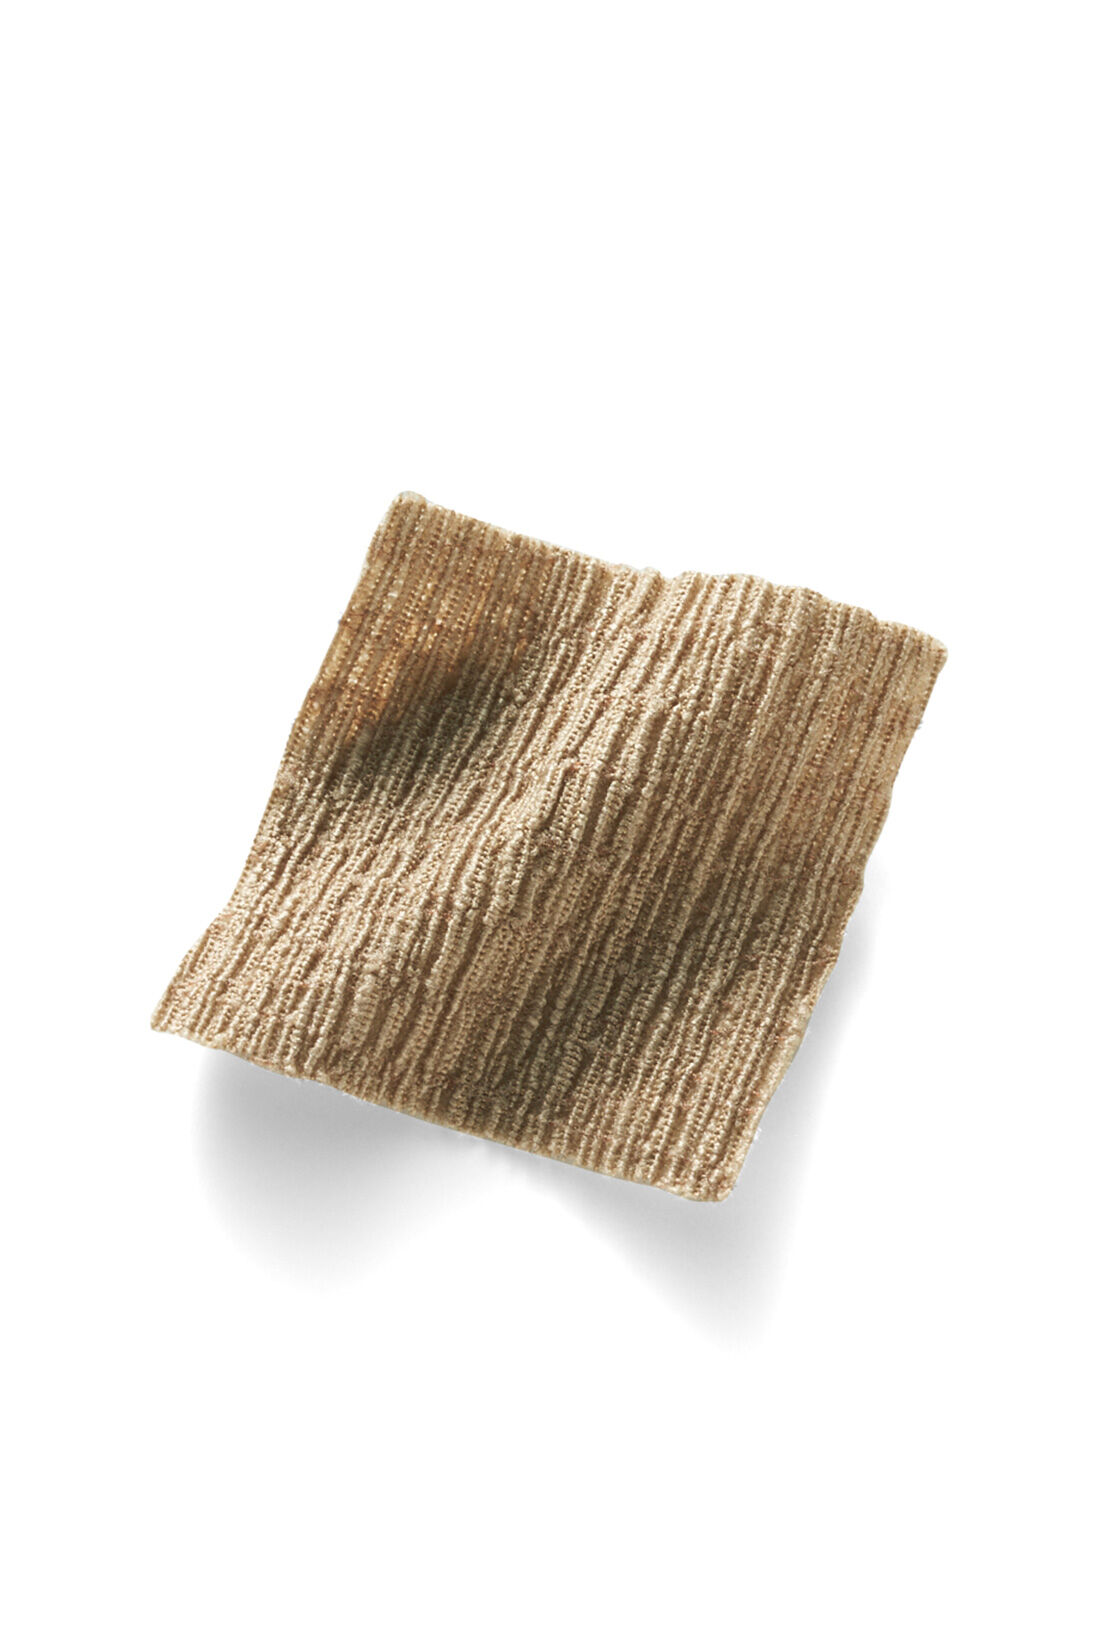 IEDIT|IEDIT[イディット]　さらりと軽やかな楊柳（ようりゅう）素材のらくちんパンツ〈チャコールブラック〉|さらりとした風合いの楊柳素材は軽くて伸びやかな着心地。